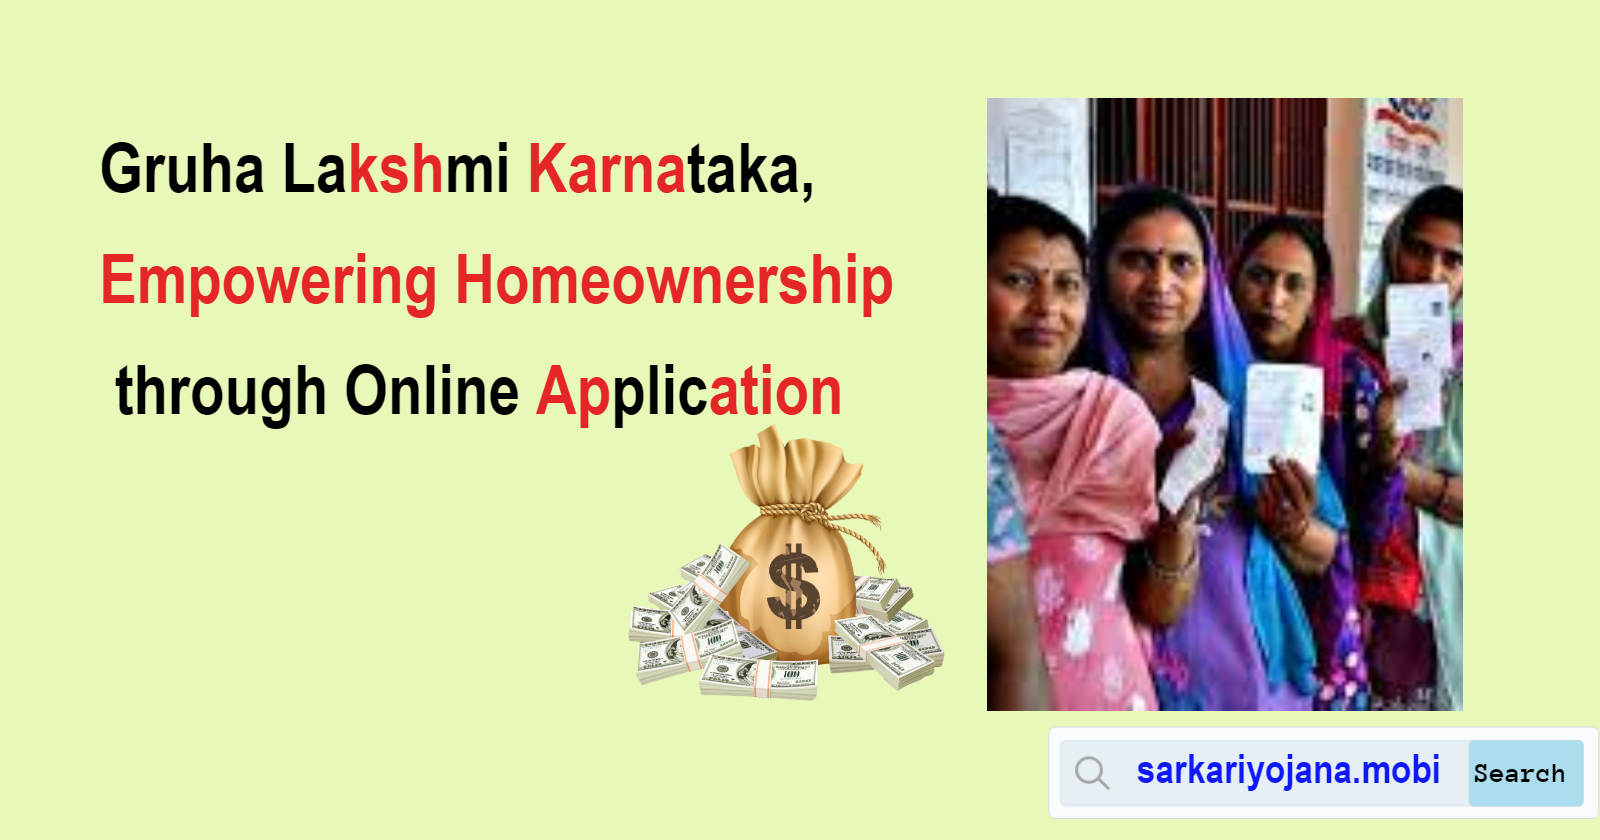 Gruha Lakshmi Karnataka, Empowering Homeownership through Online Application